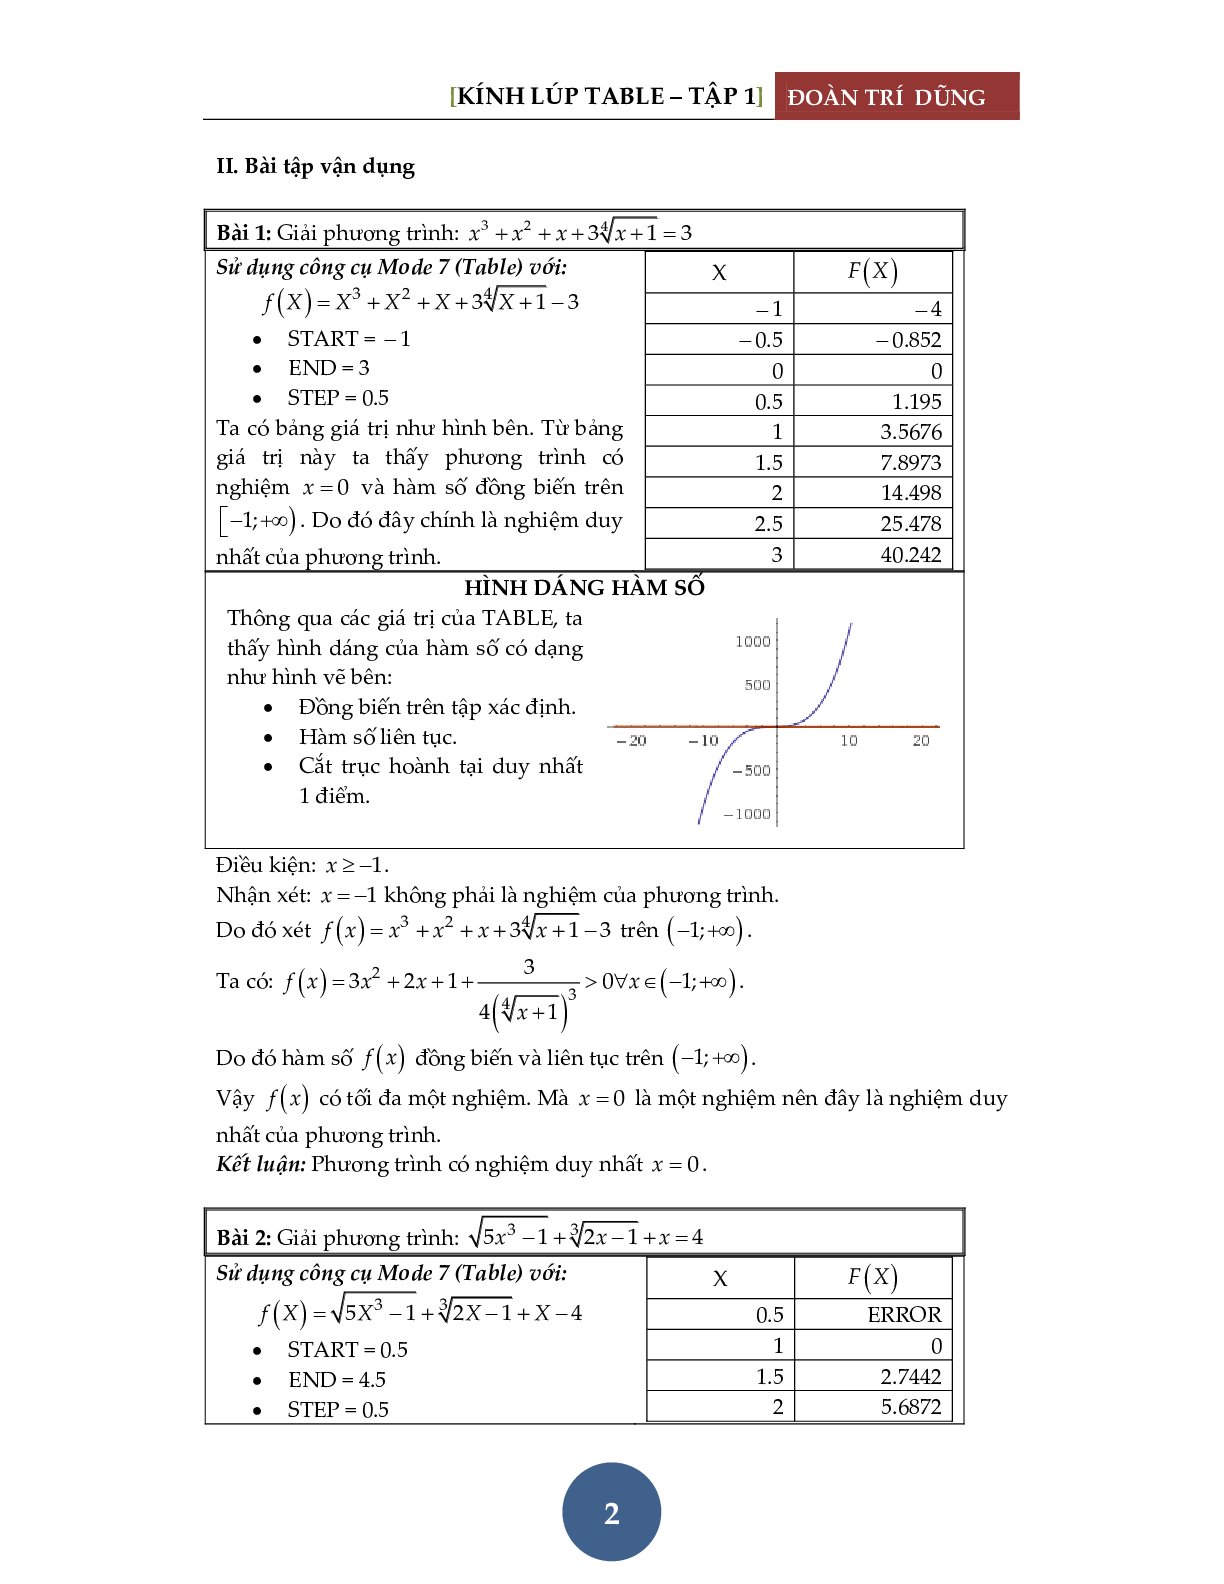 Giải phương trình bằng máy tính Casio – Tập 1: Đánh giá hàm đơn điệu (trang 3)